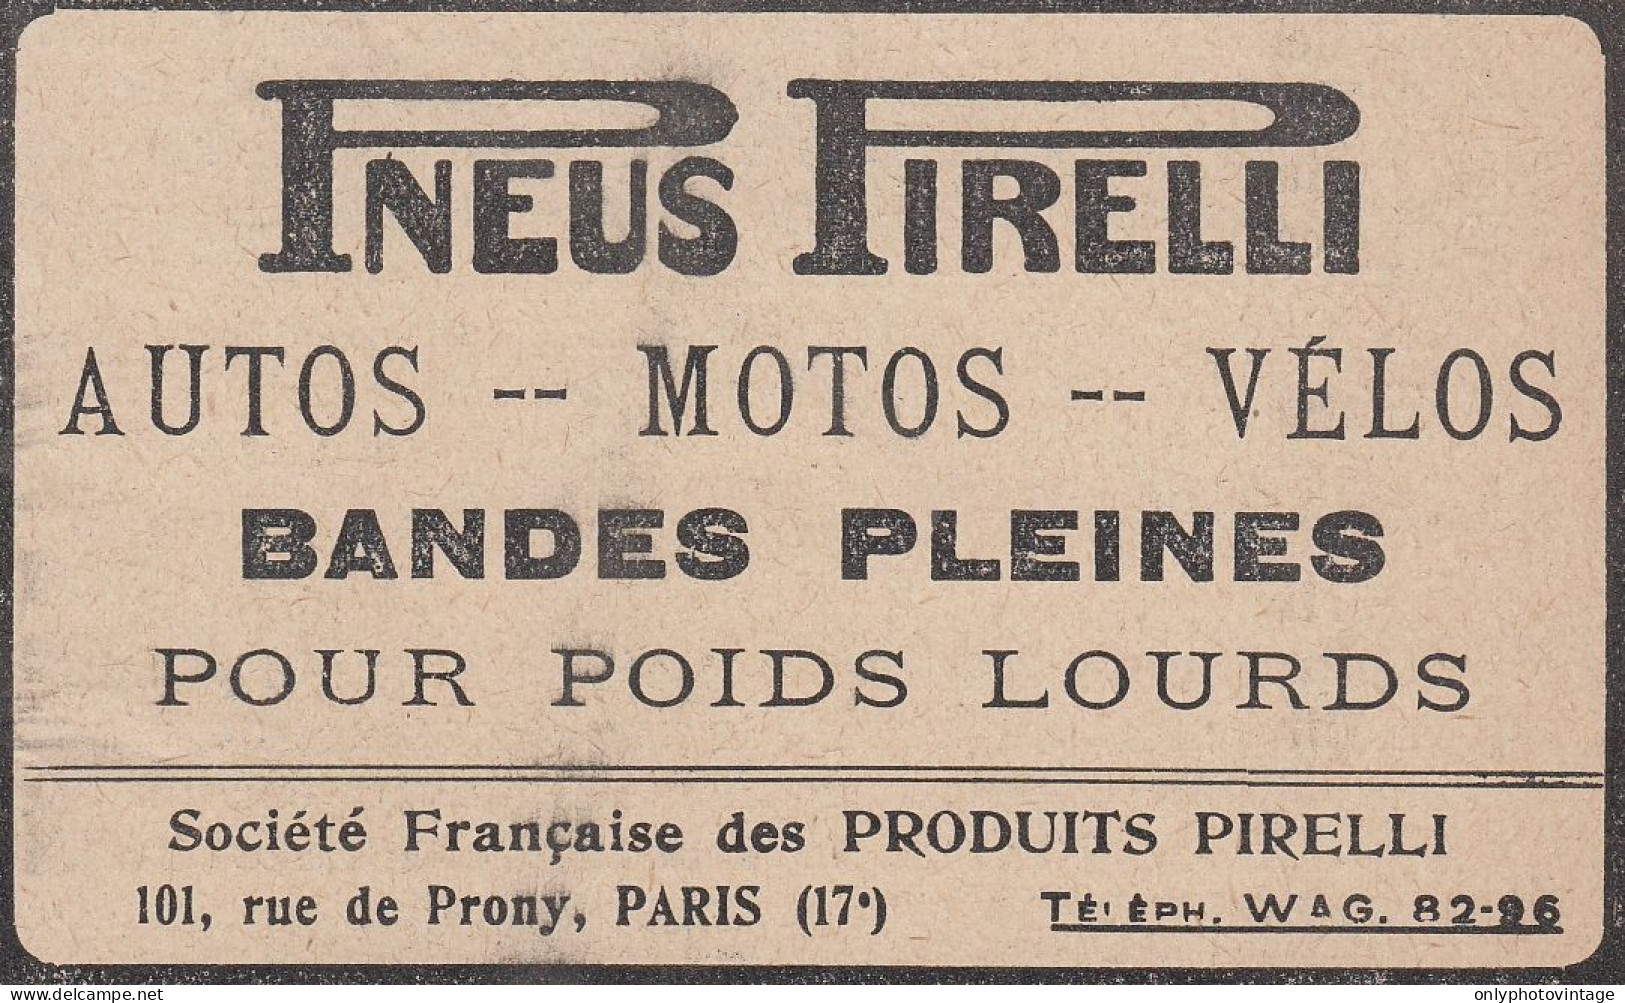 Pneus PIRELLI - 1920 Vintage Advertising - Pubblicit� Epoca - Advertising